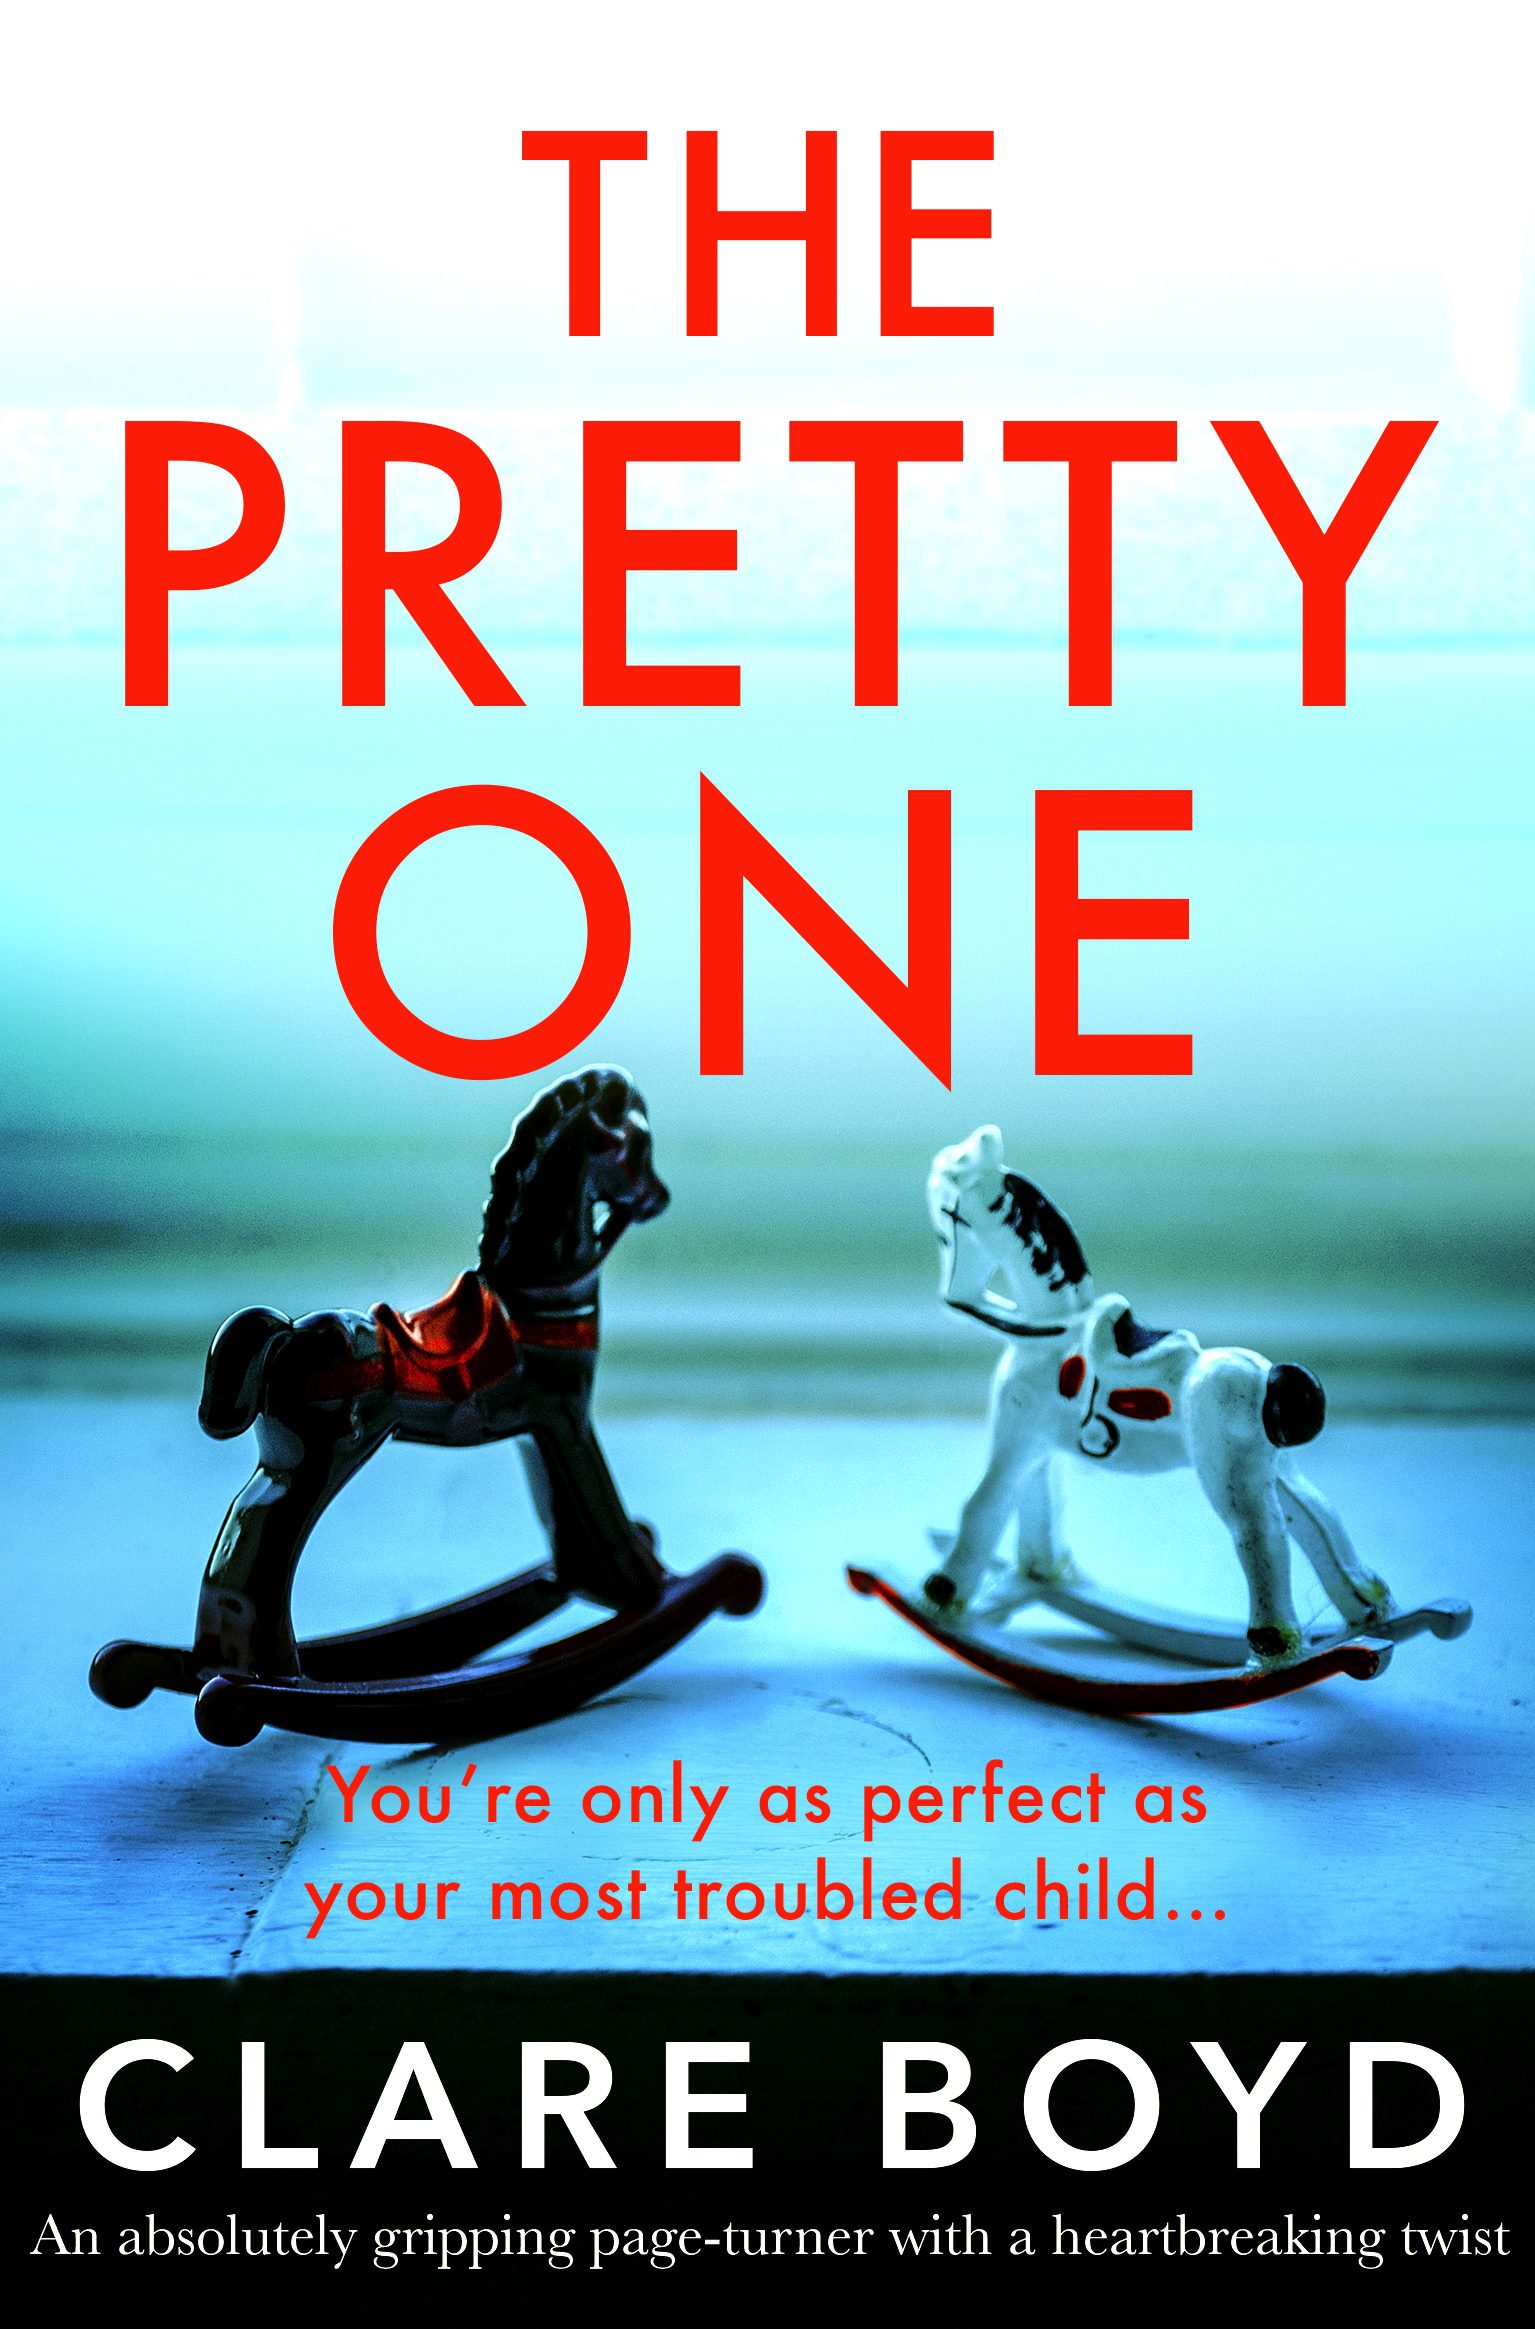 The Pretty One book cover